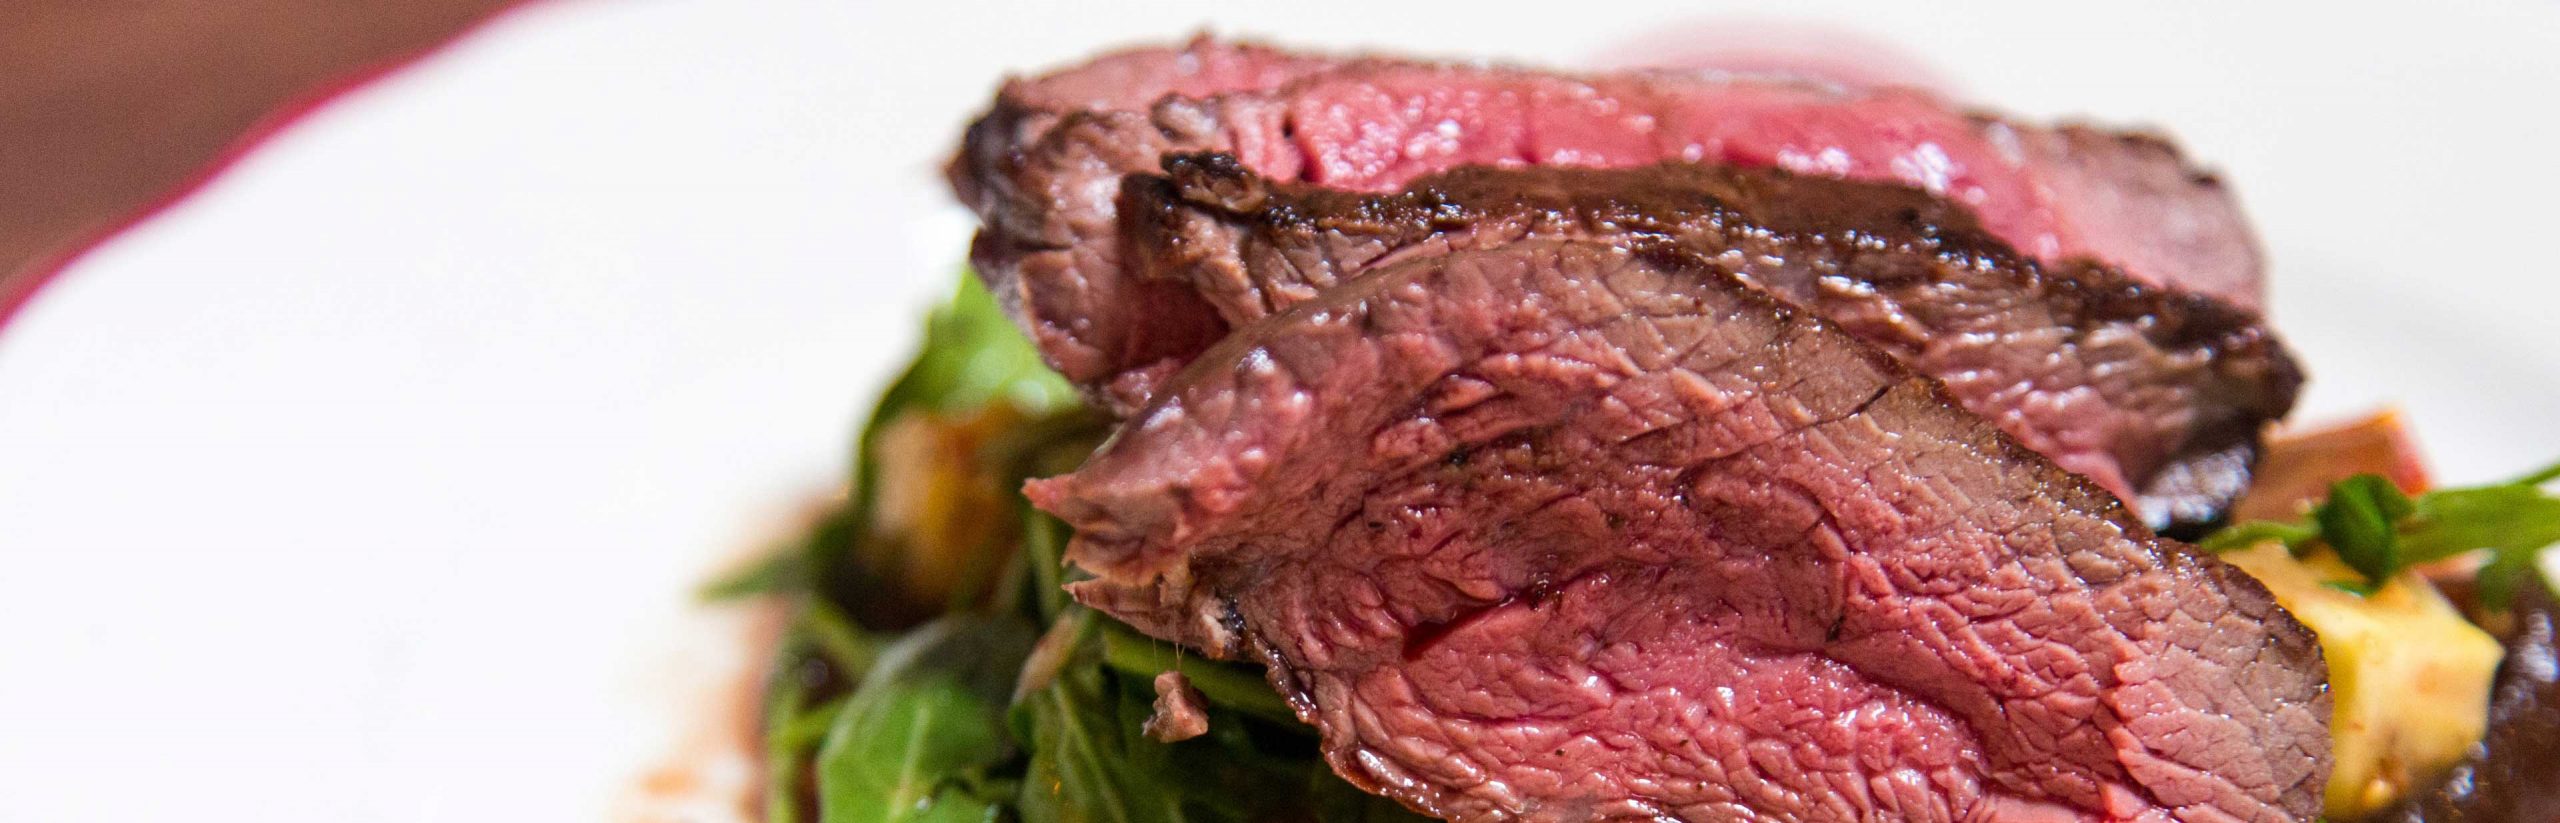 Rood vlees eten veroorzaakt lichaamsgeur